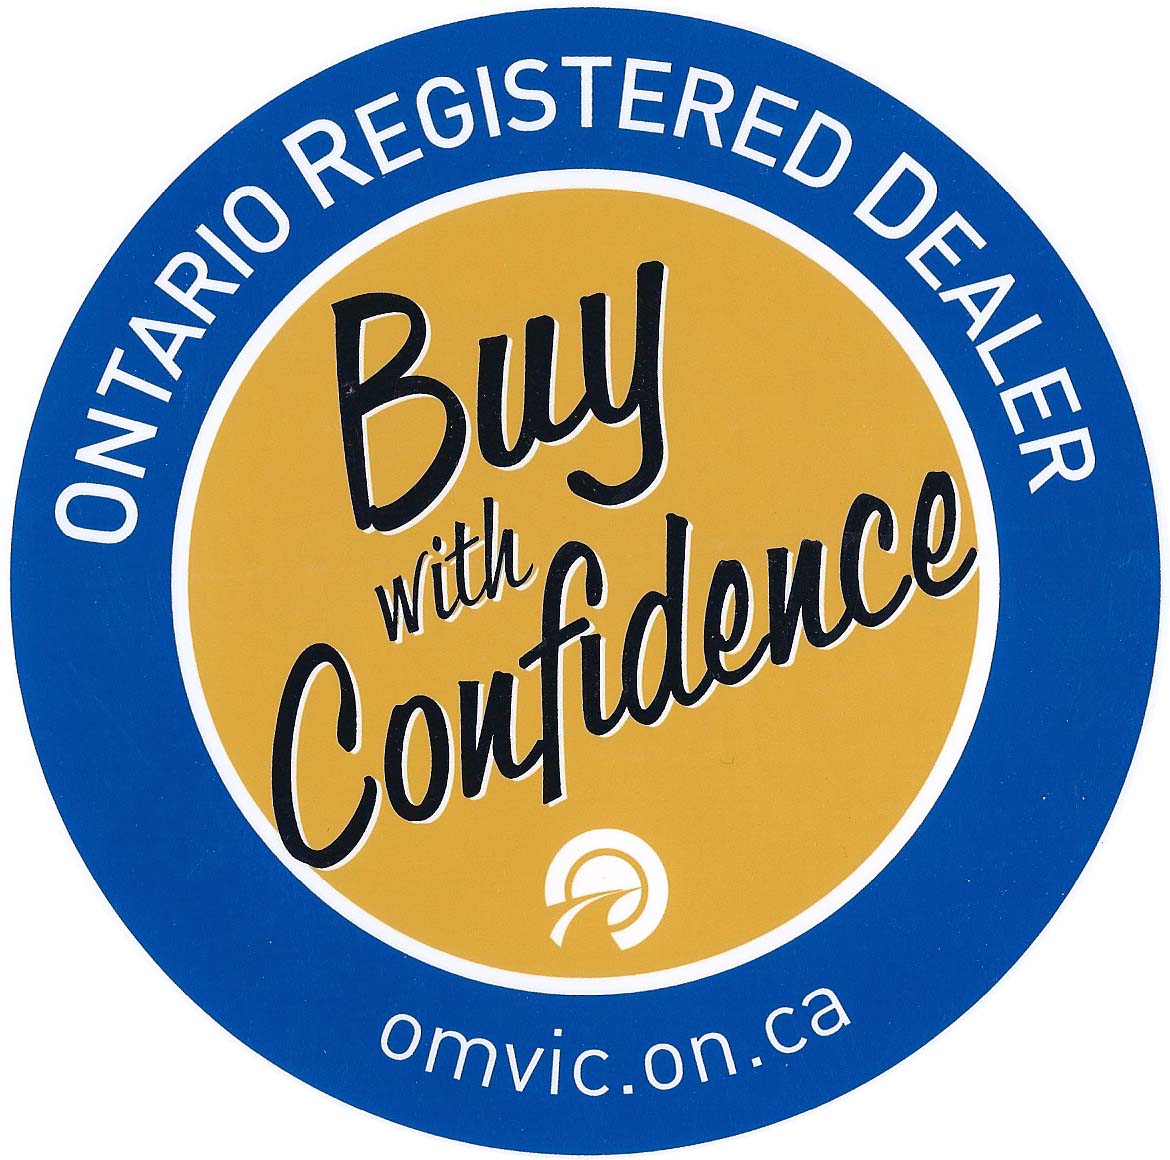 Ontario Registered Dealer.jpg